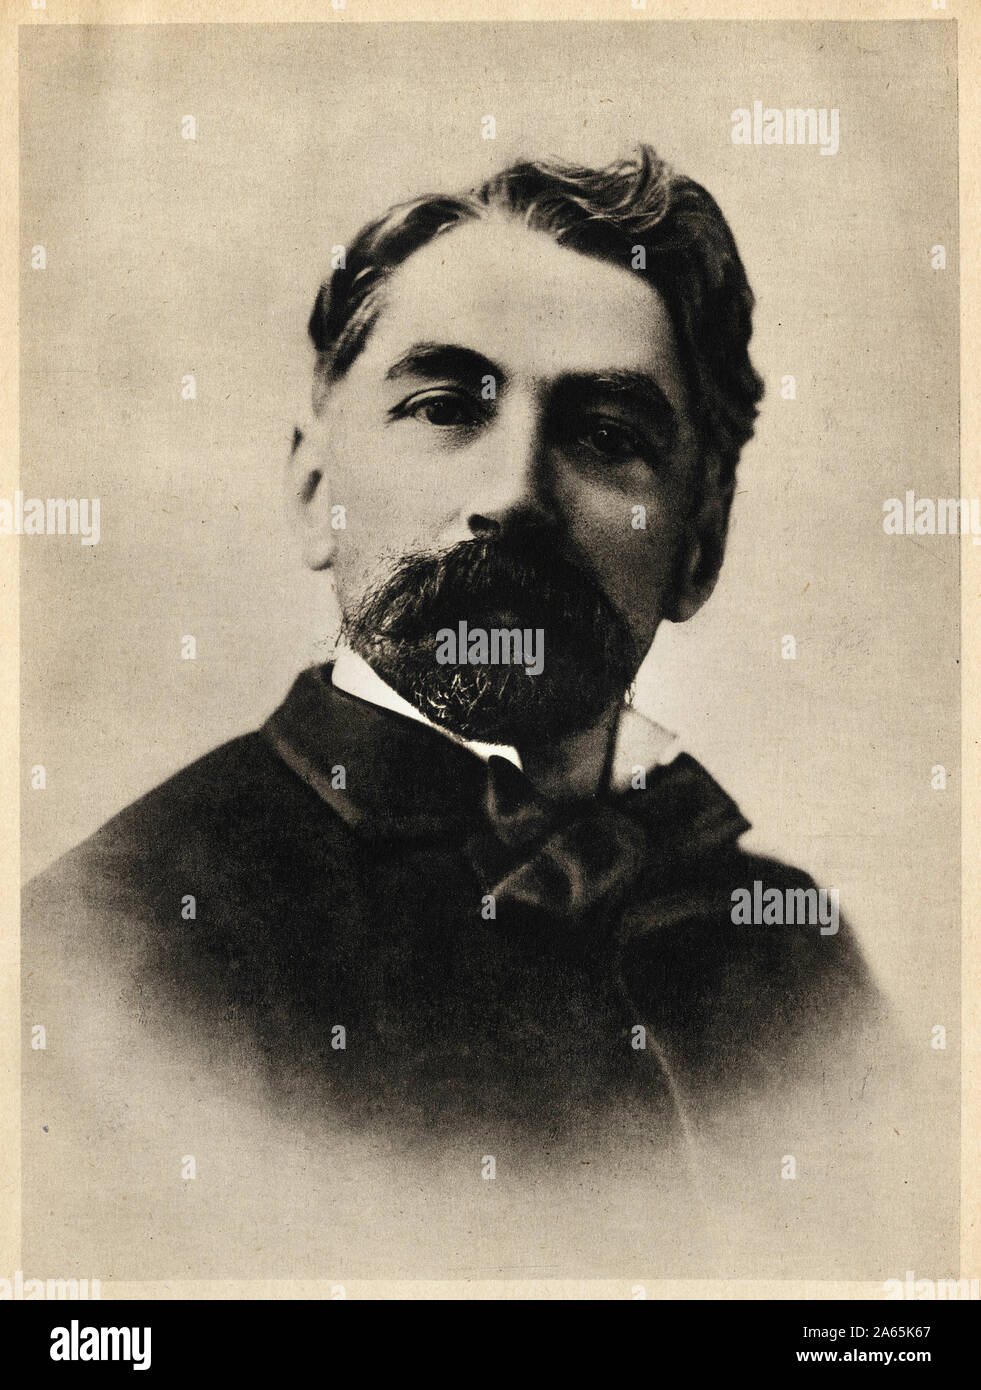 Portrait d'Etienne Mallarmé en 1869, dit Stephane Mallarmé, (1842-1898), poete. Illustr. in "Le Point", fevrier - avril 1944, Revue artistique et li Stockfoto